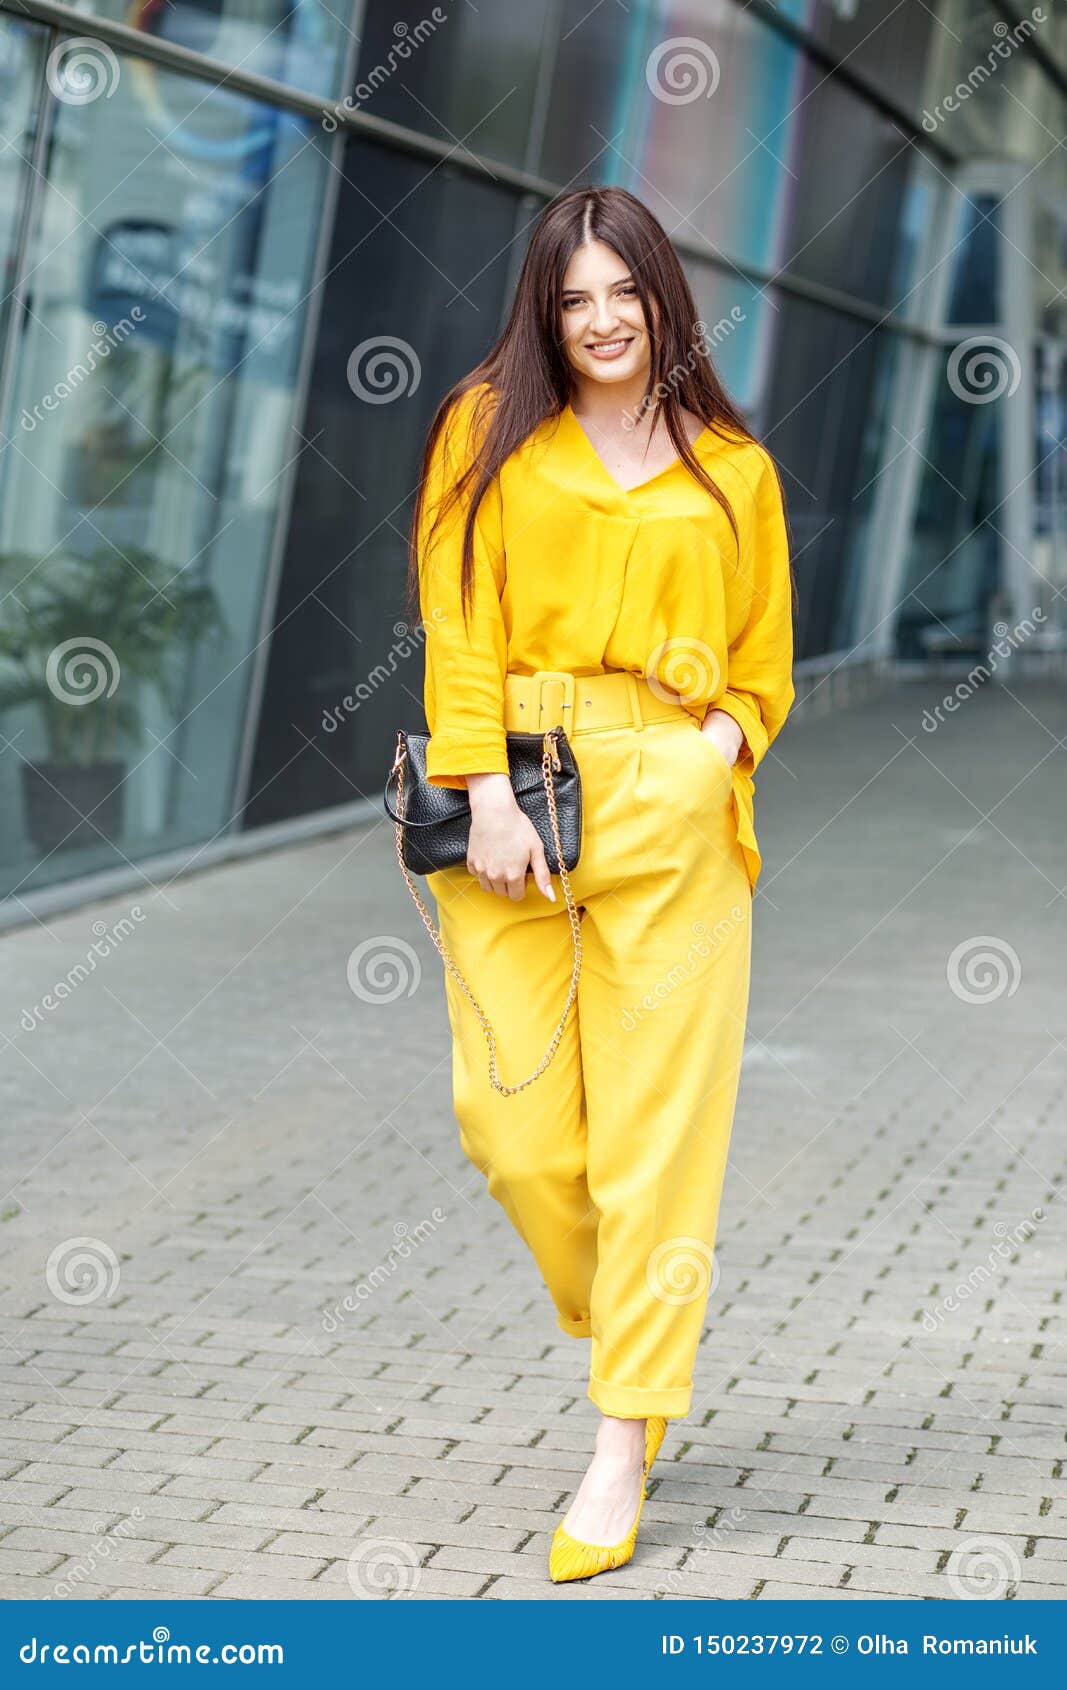 Descubrir 92+ imagen ropa amarilla para mujer